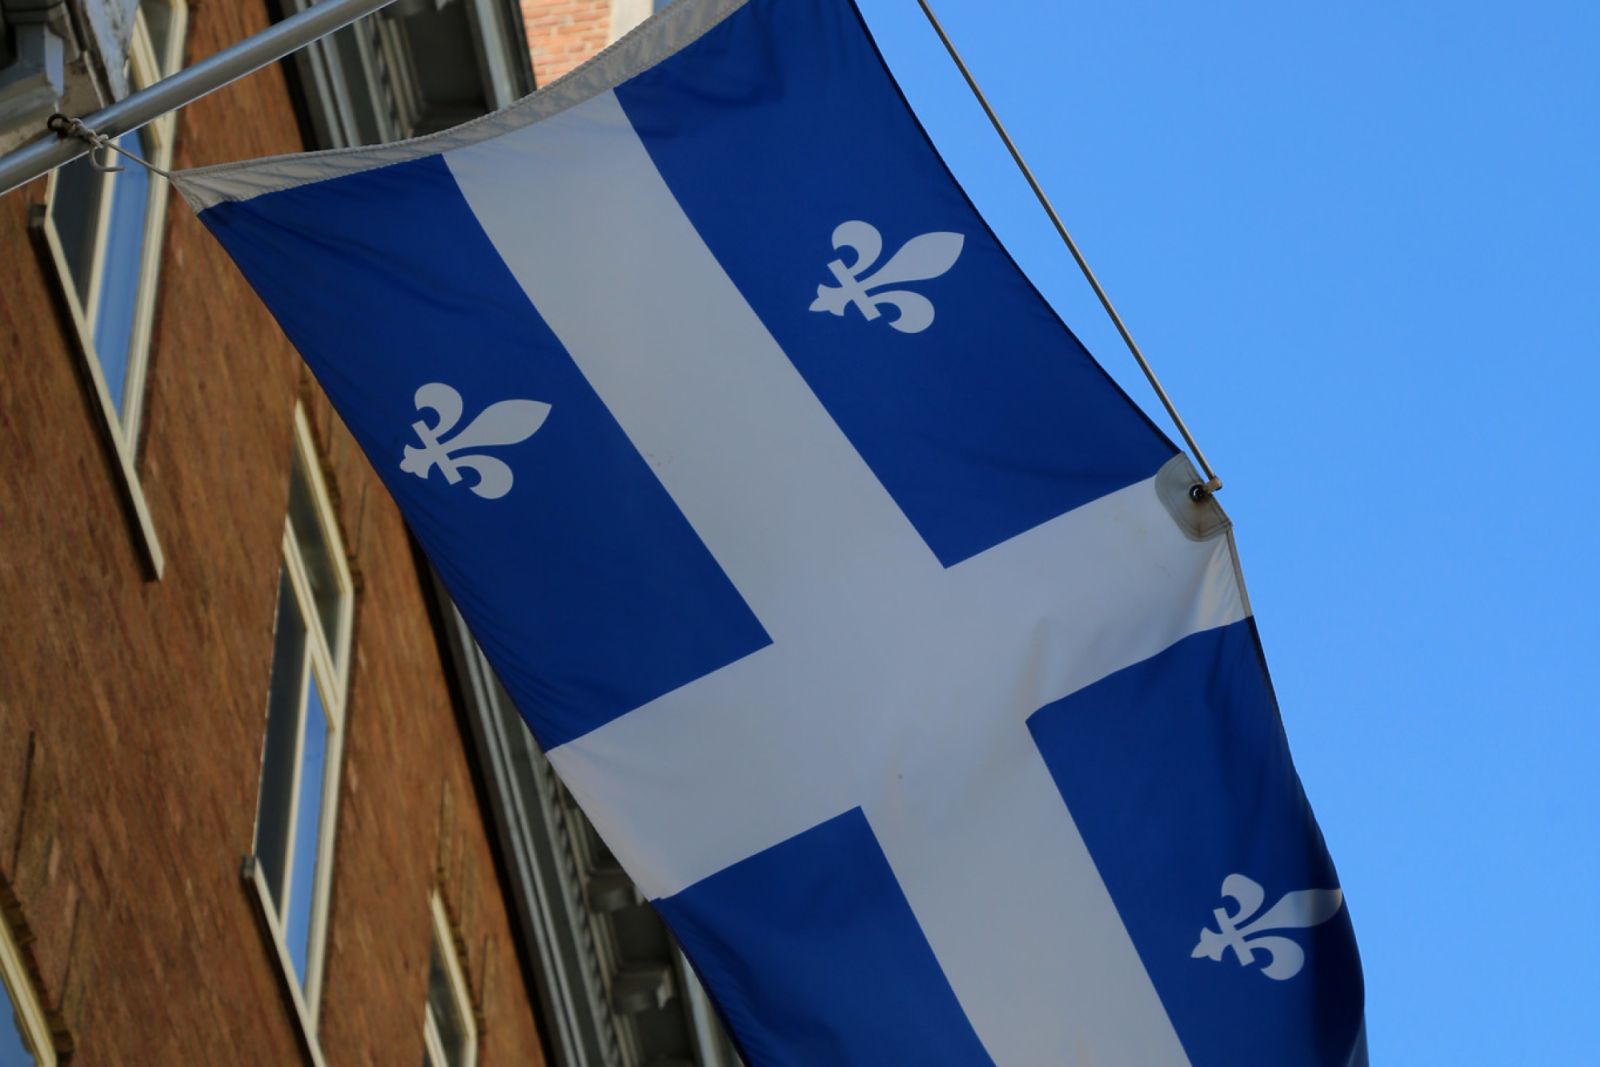 The provincial flag of Quebec